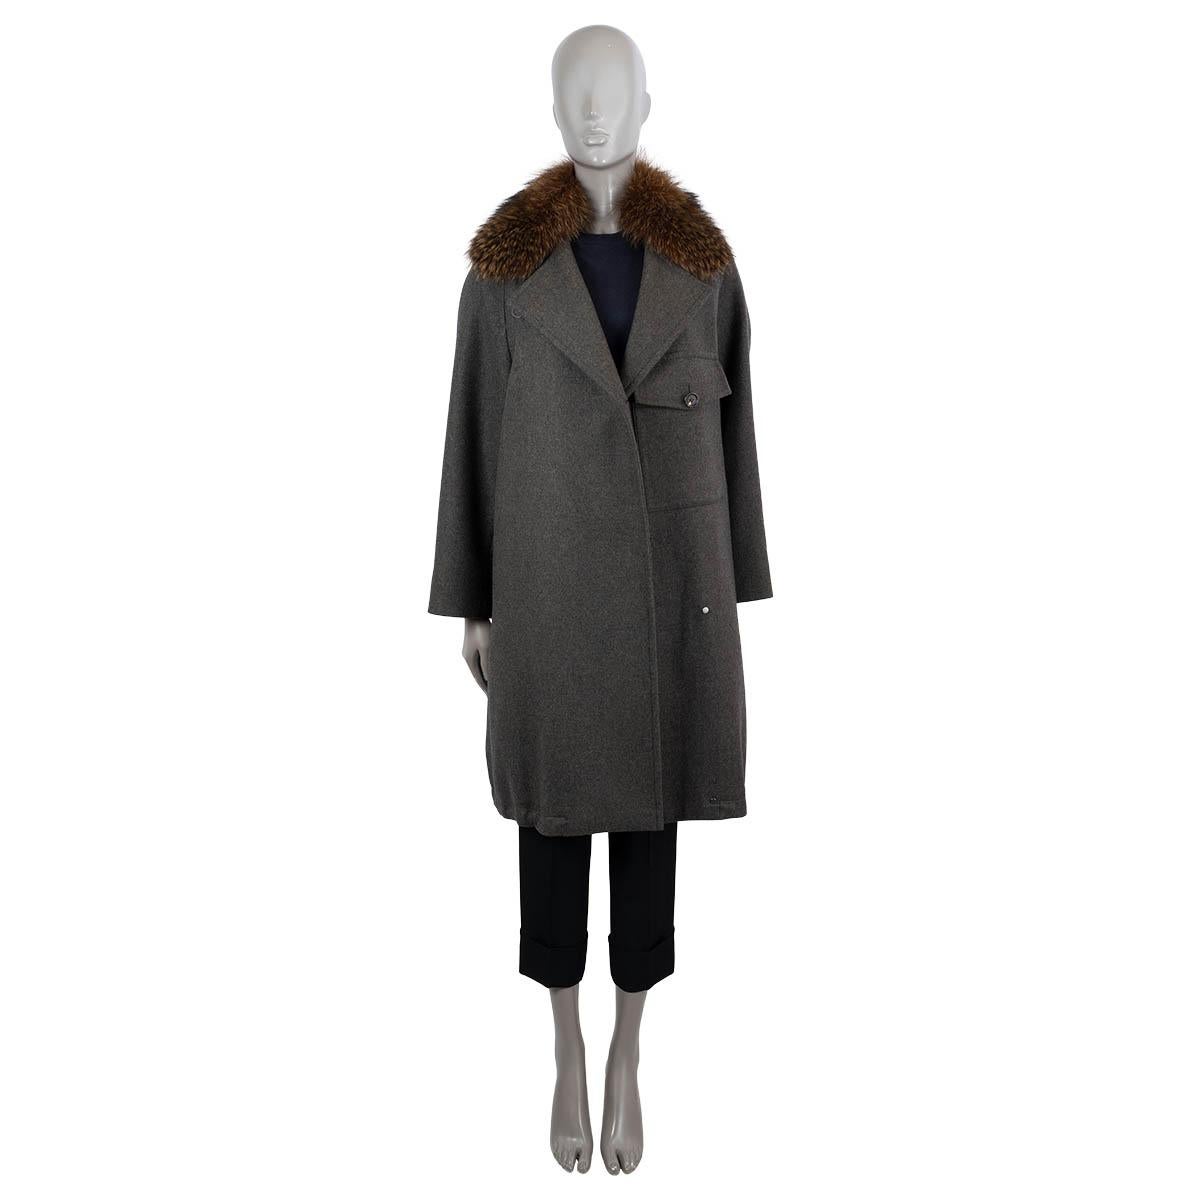 100% authentique Brunello Coates manteau asymétrique surdimensionné garni de fourrure en cachemire gris foncé, marron et vert olive (100%). Ce modèle est doté d'un col amovible garni de fourrure, d'une poche à rabat sur la poitrine et d'un cordon de